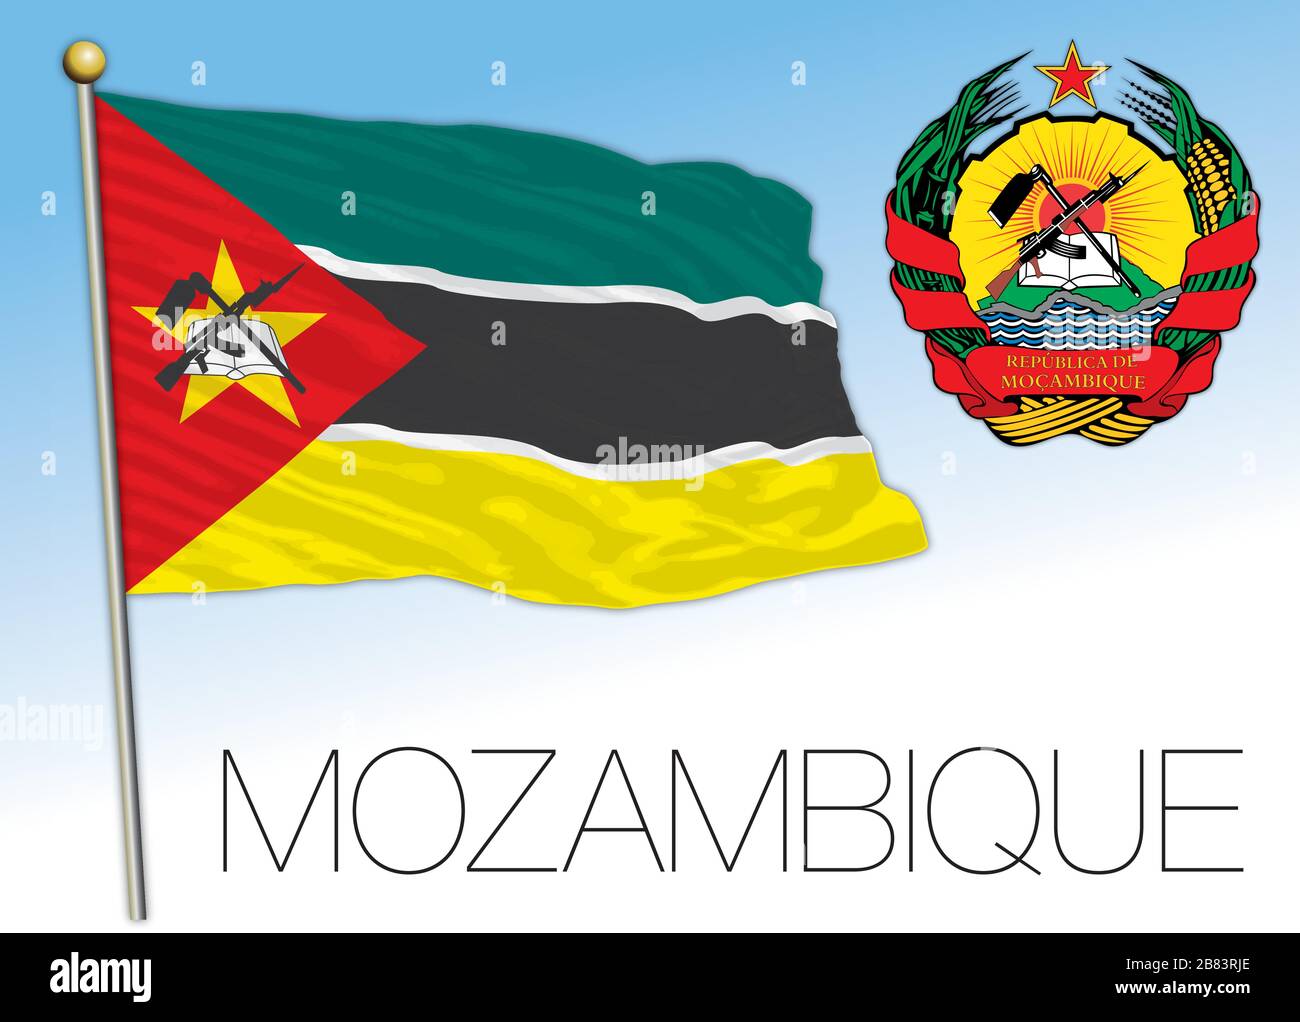 Mozambique drapeau national officiel et armoiries, afrique, illustration vectorielle Illustration de Vecteur